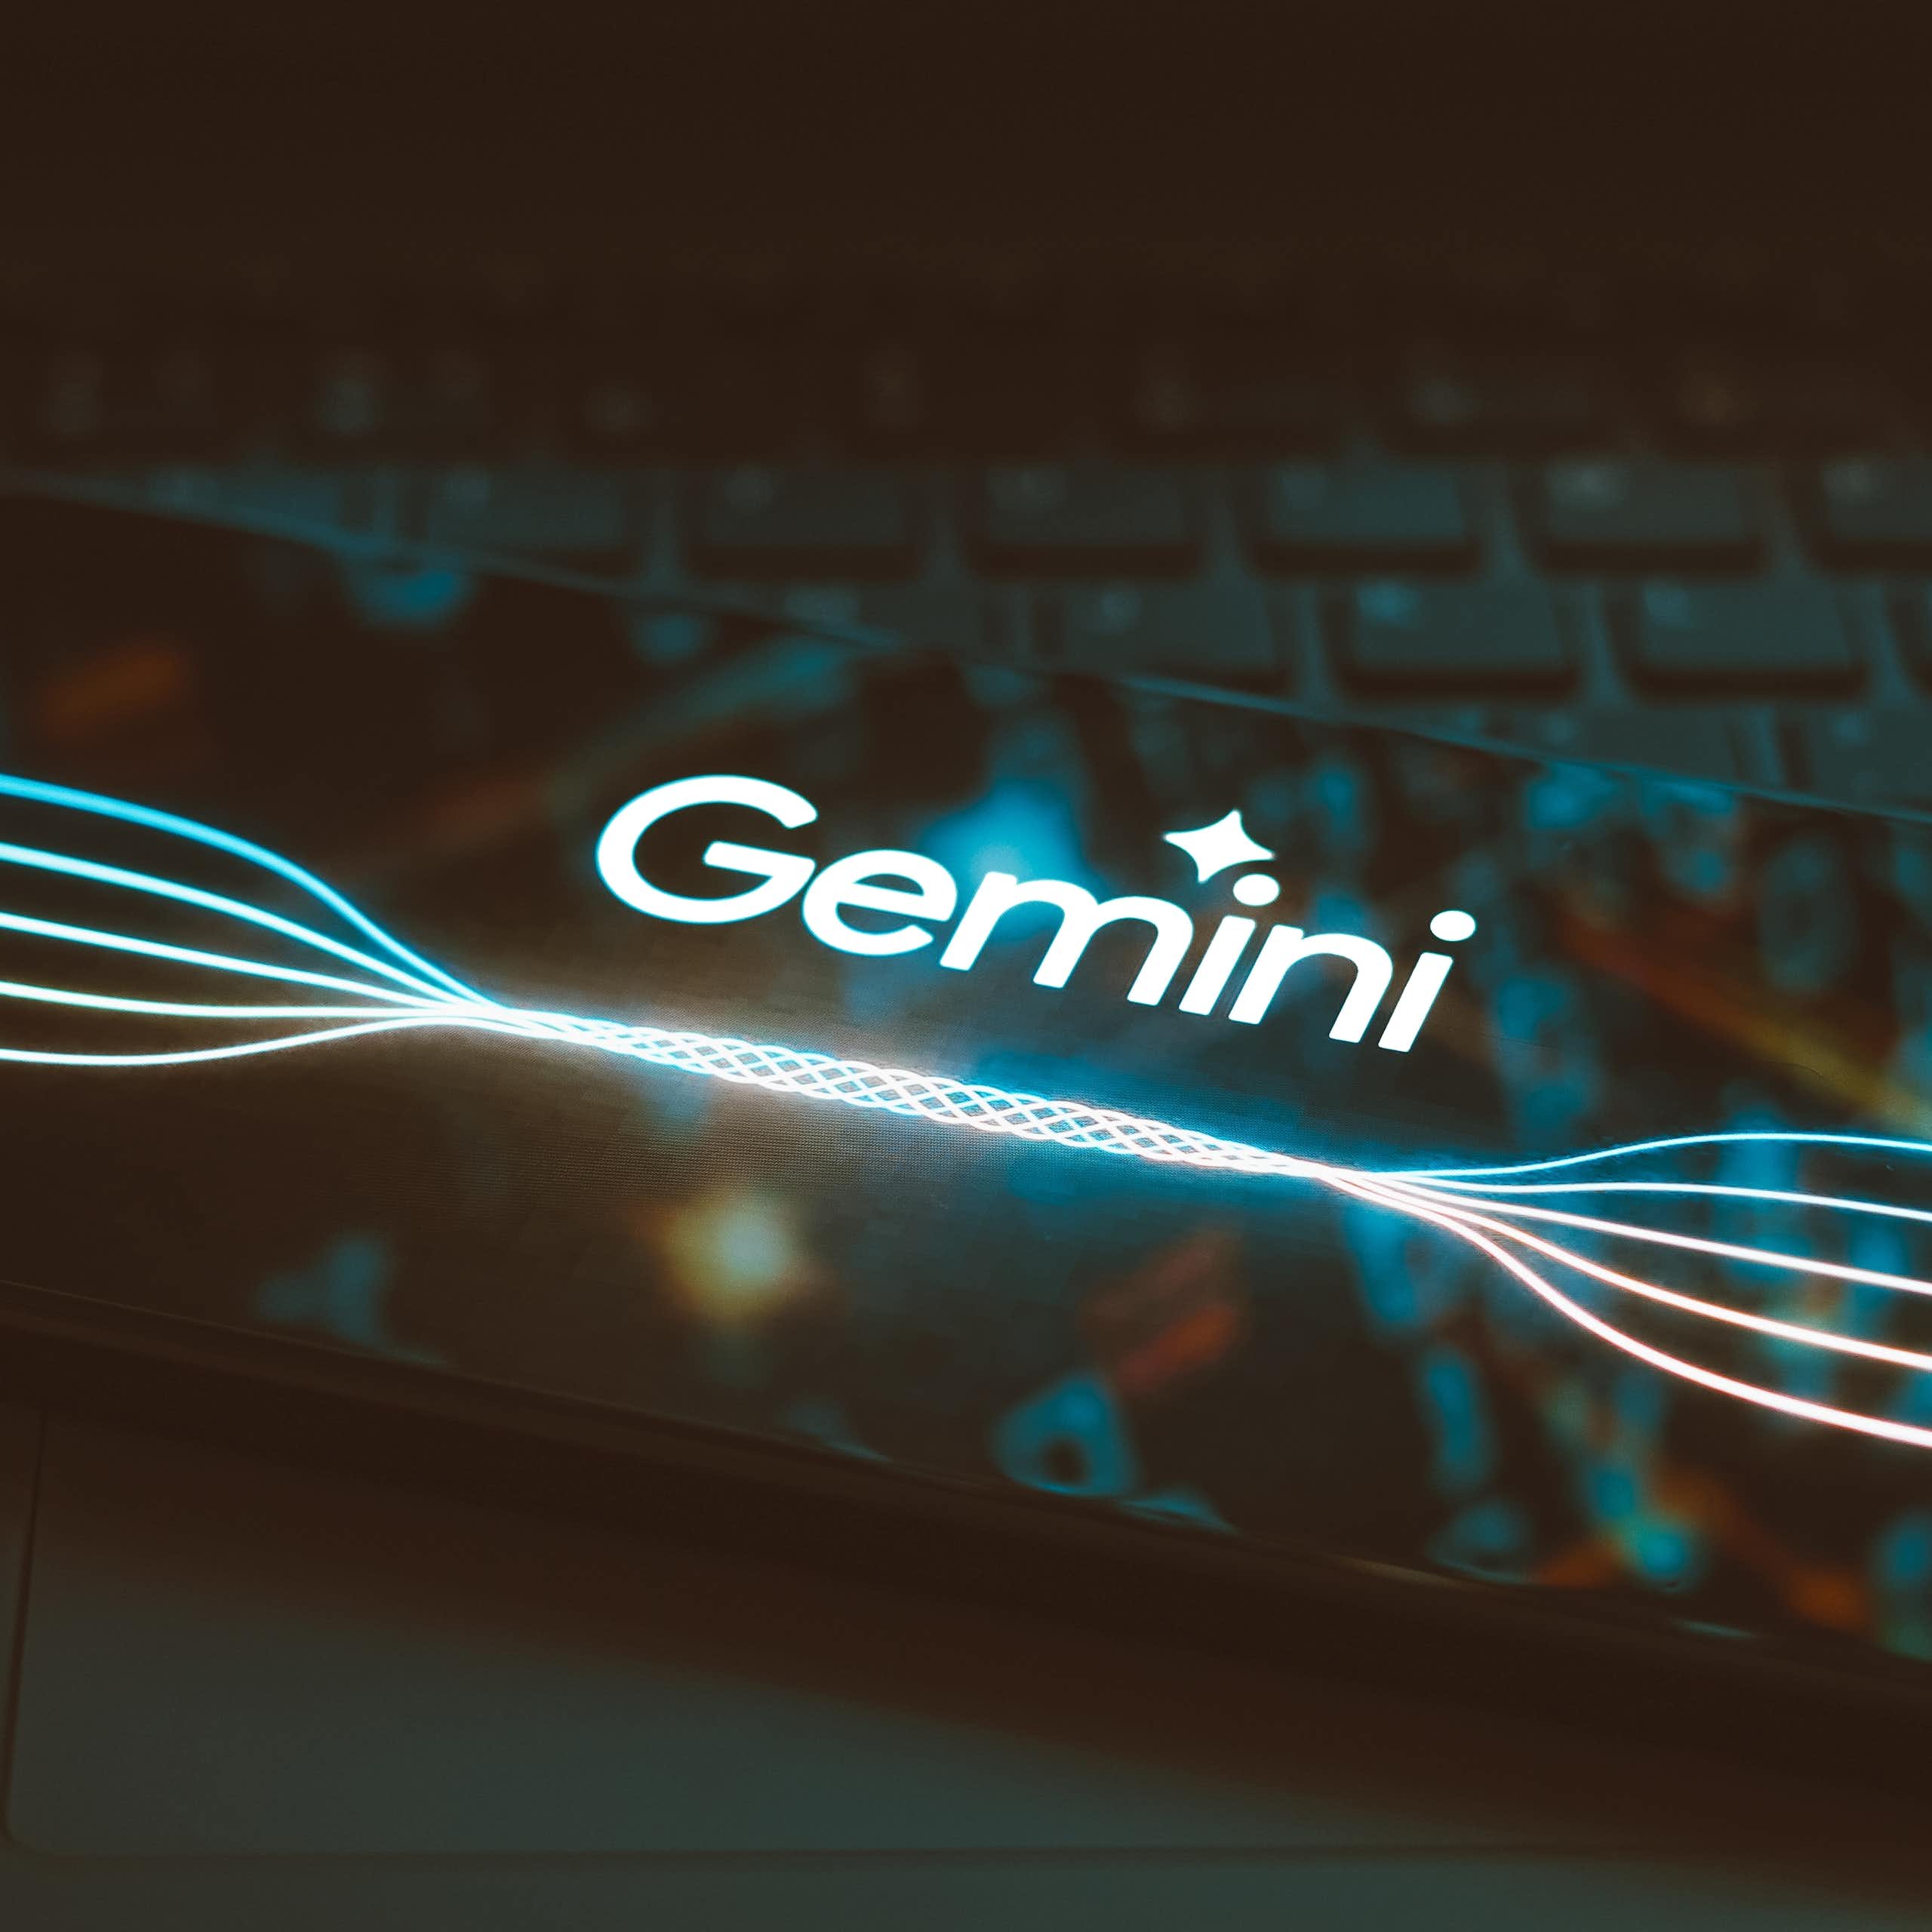 écran de téléphone portable avec le mot-symbole Gemini